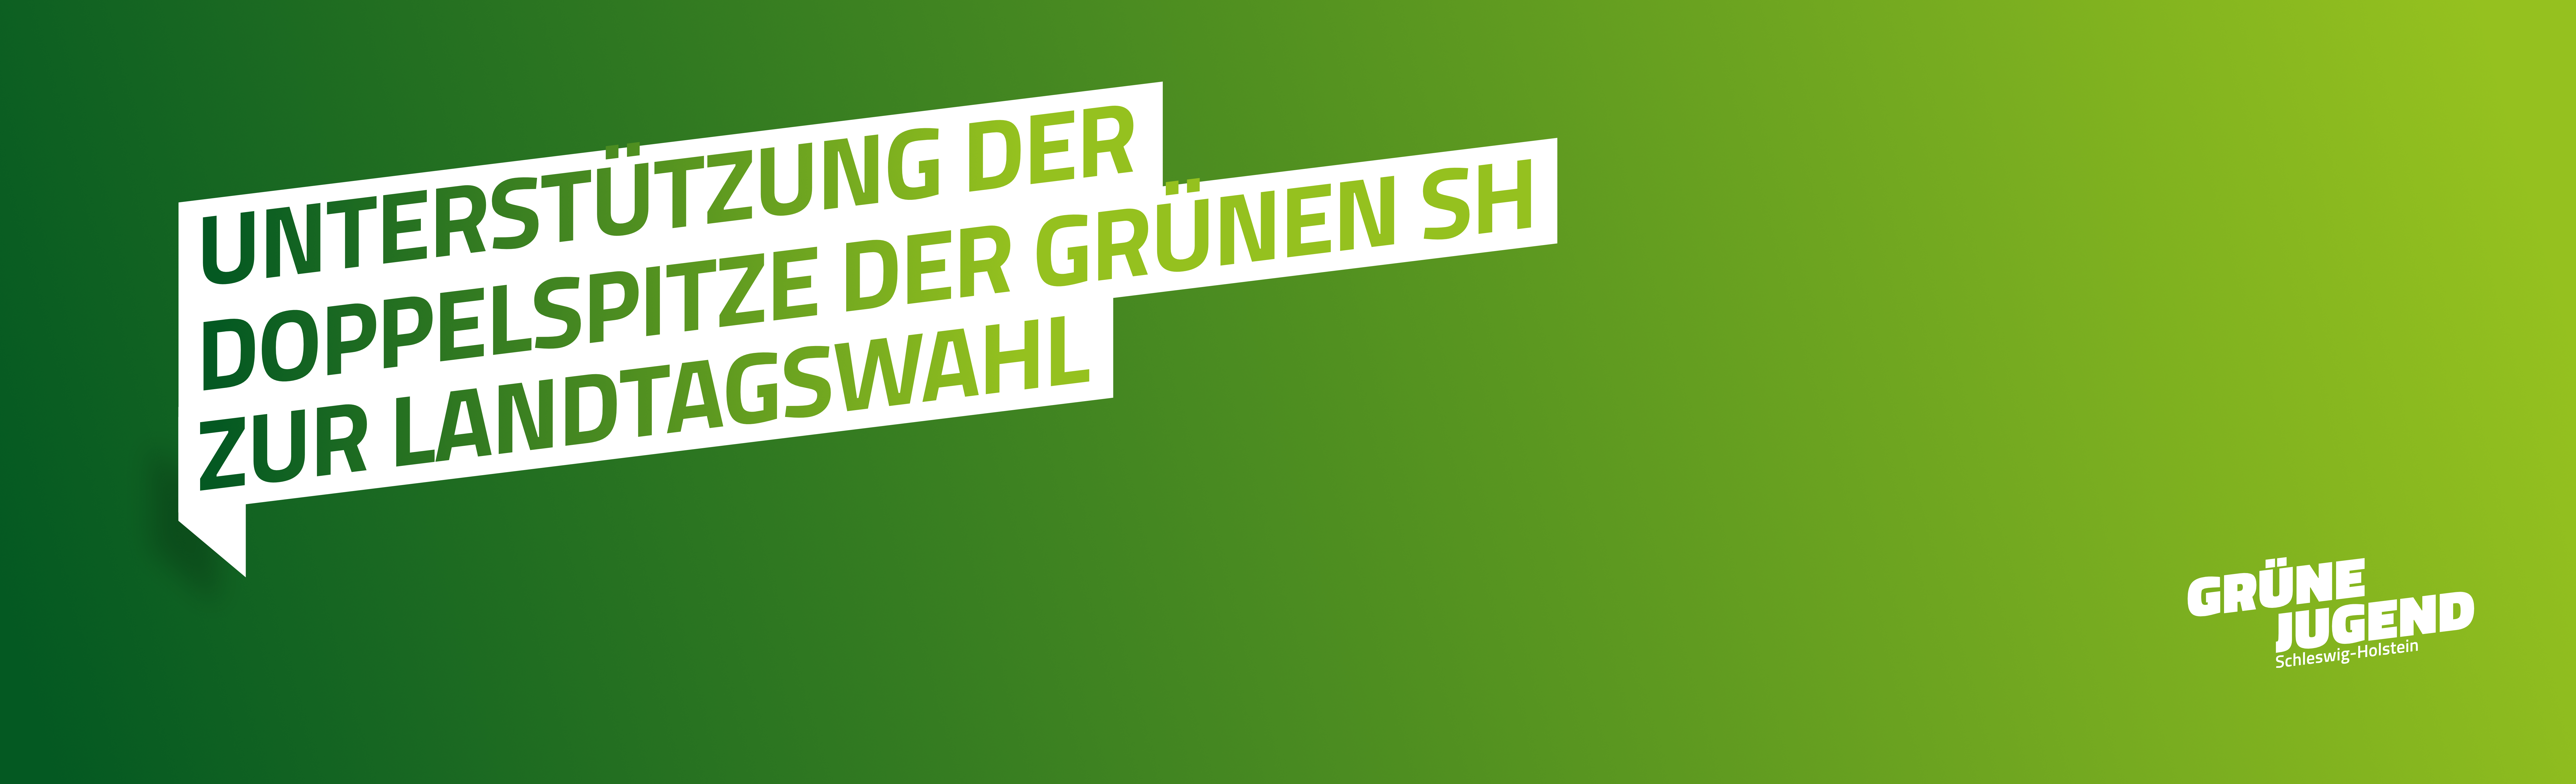 Grüne Jugend Schleswig-Holstein unterstützt Doppelspitze der Grünen SH zur Landtagswahl!